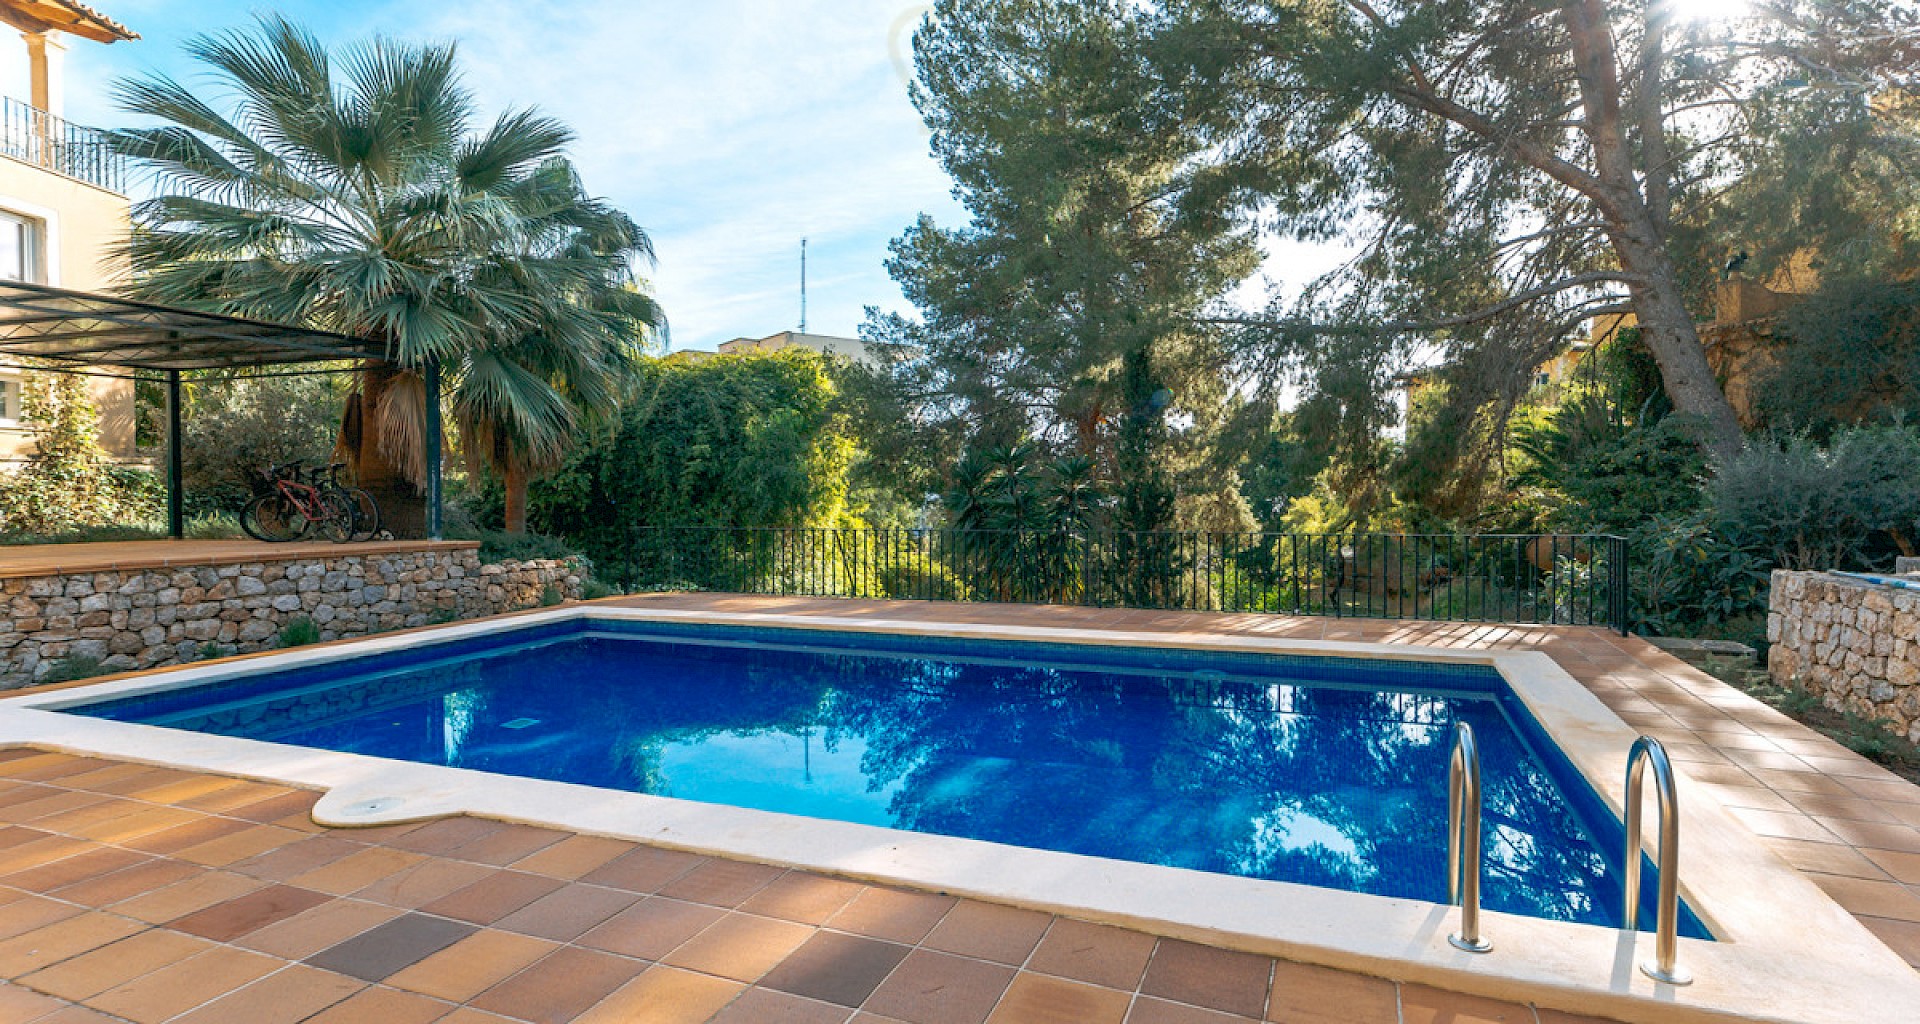 KROHN & LUEDEMANN Casa mediterránea en Génova con piscina comunitaria en un complejo privado bien cuidado Mediterranes Haus in Genova mit Gemeinschaftspool 26